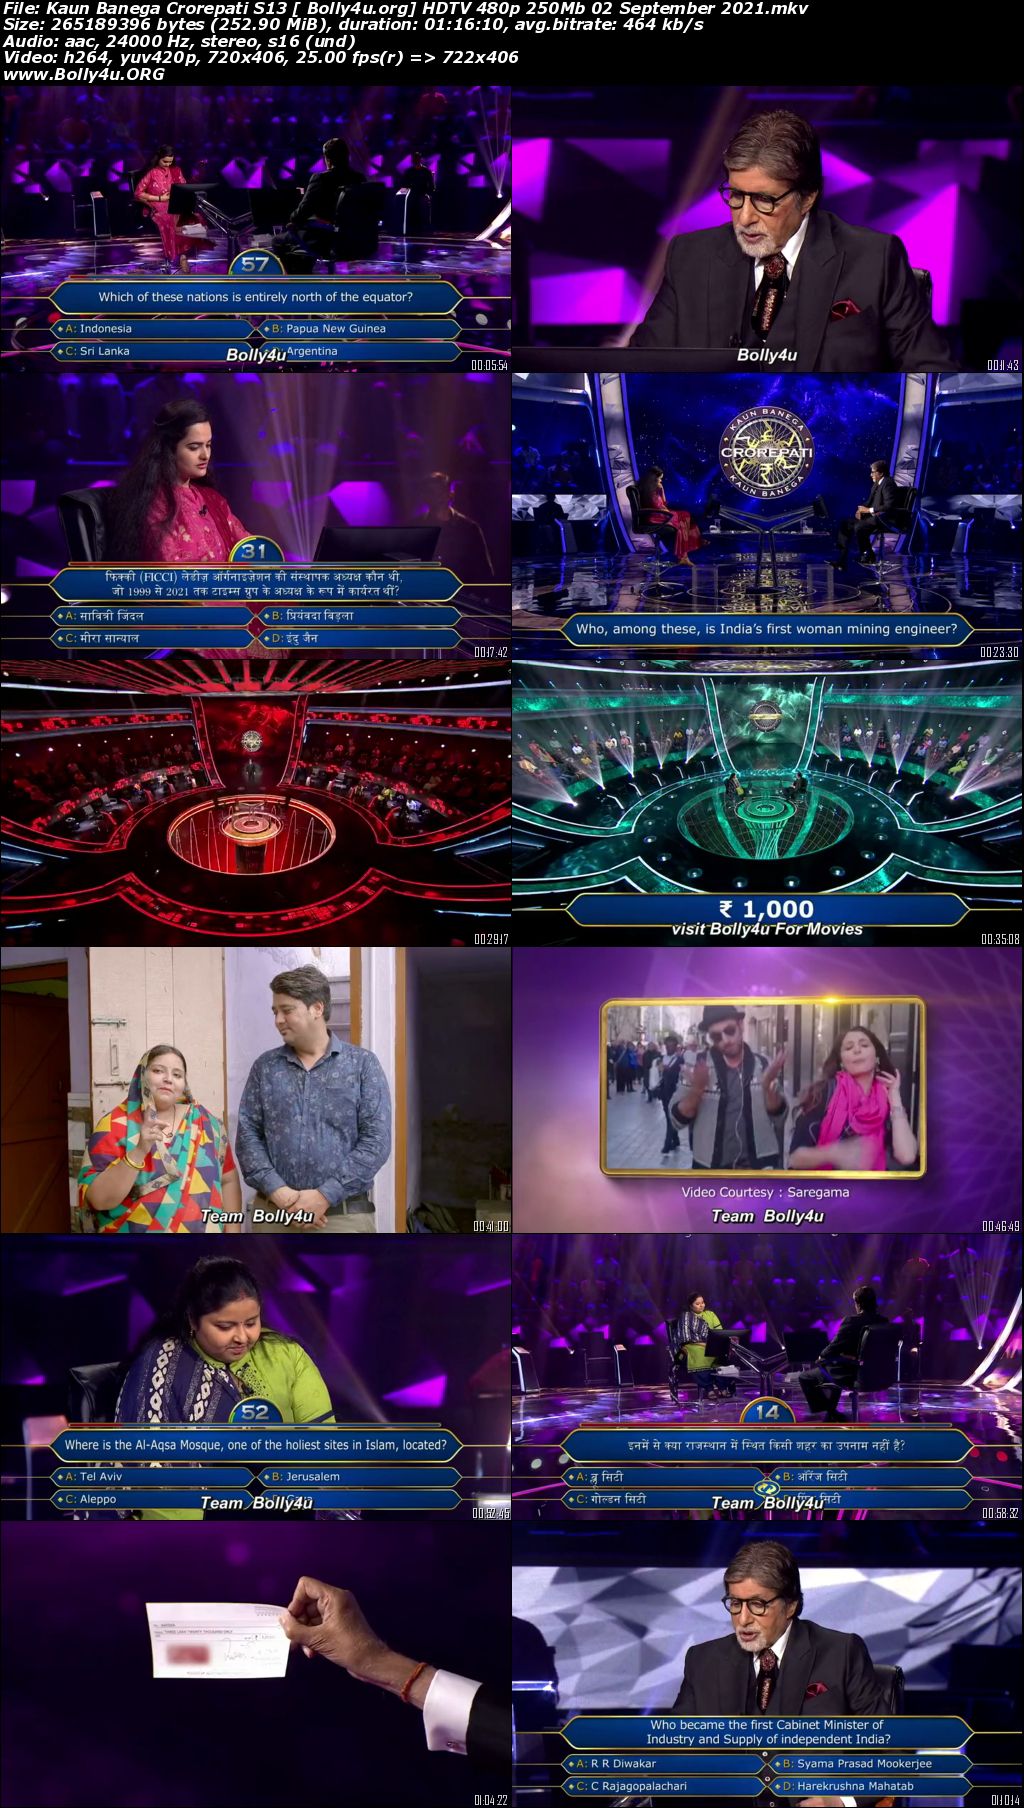 Kaun Banega Crorepati S13 HDTV 480p 250Mb 02 September 2021 Download